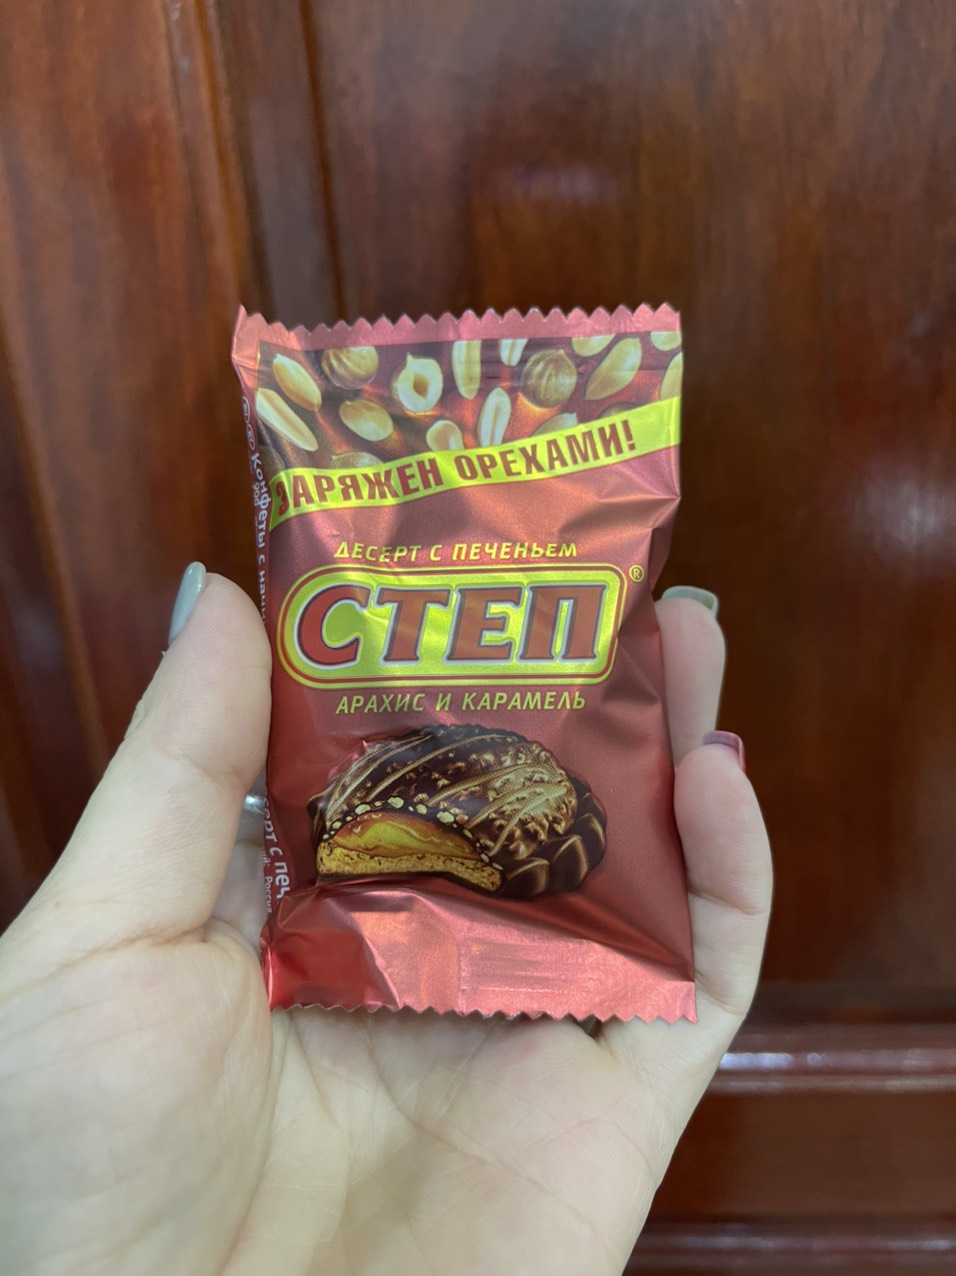 Chocolate-Cten-500g (5)